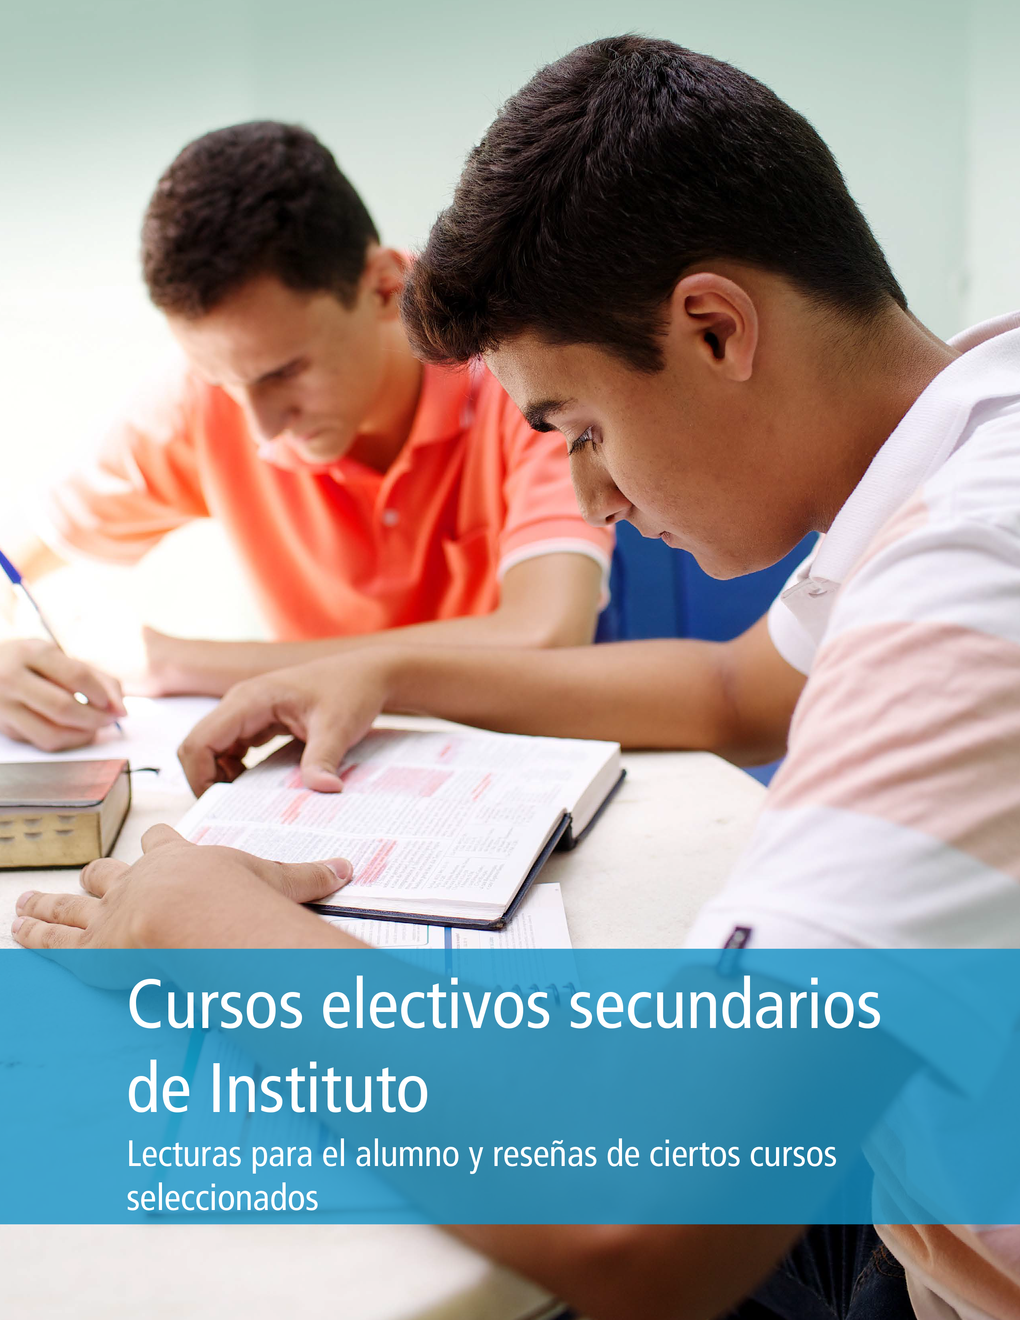 Lecturas electivas secundarias de Instituto para el alumno